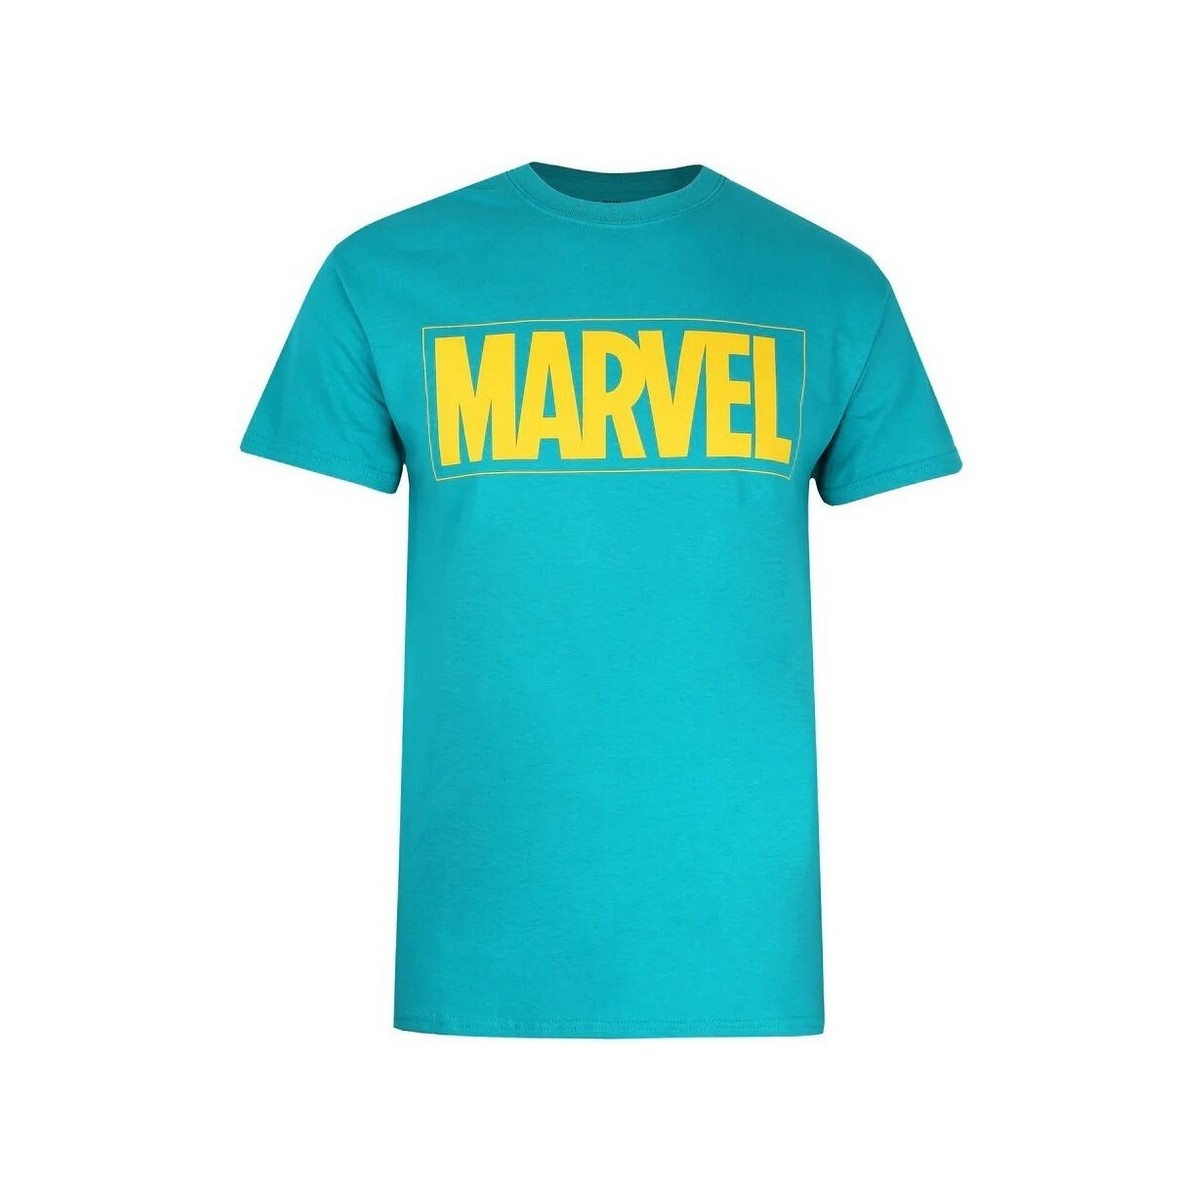 Vêtements Homme T-shirts manches longues Marvel  Multicolore